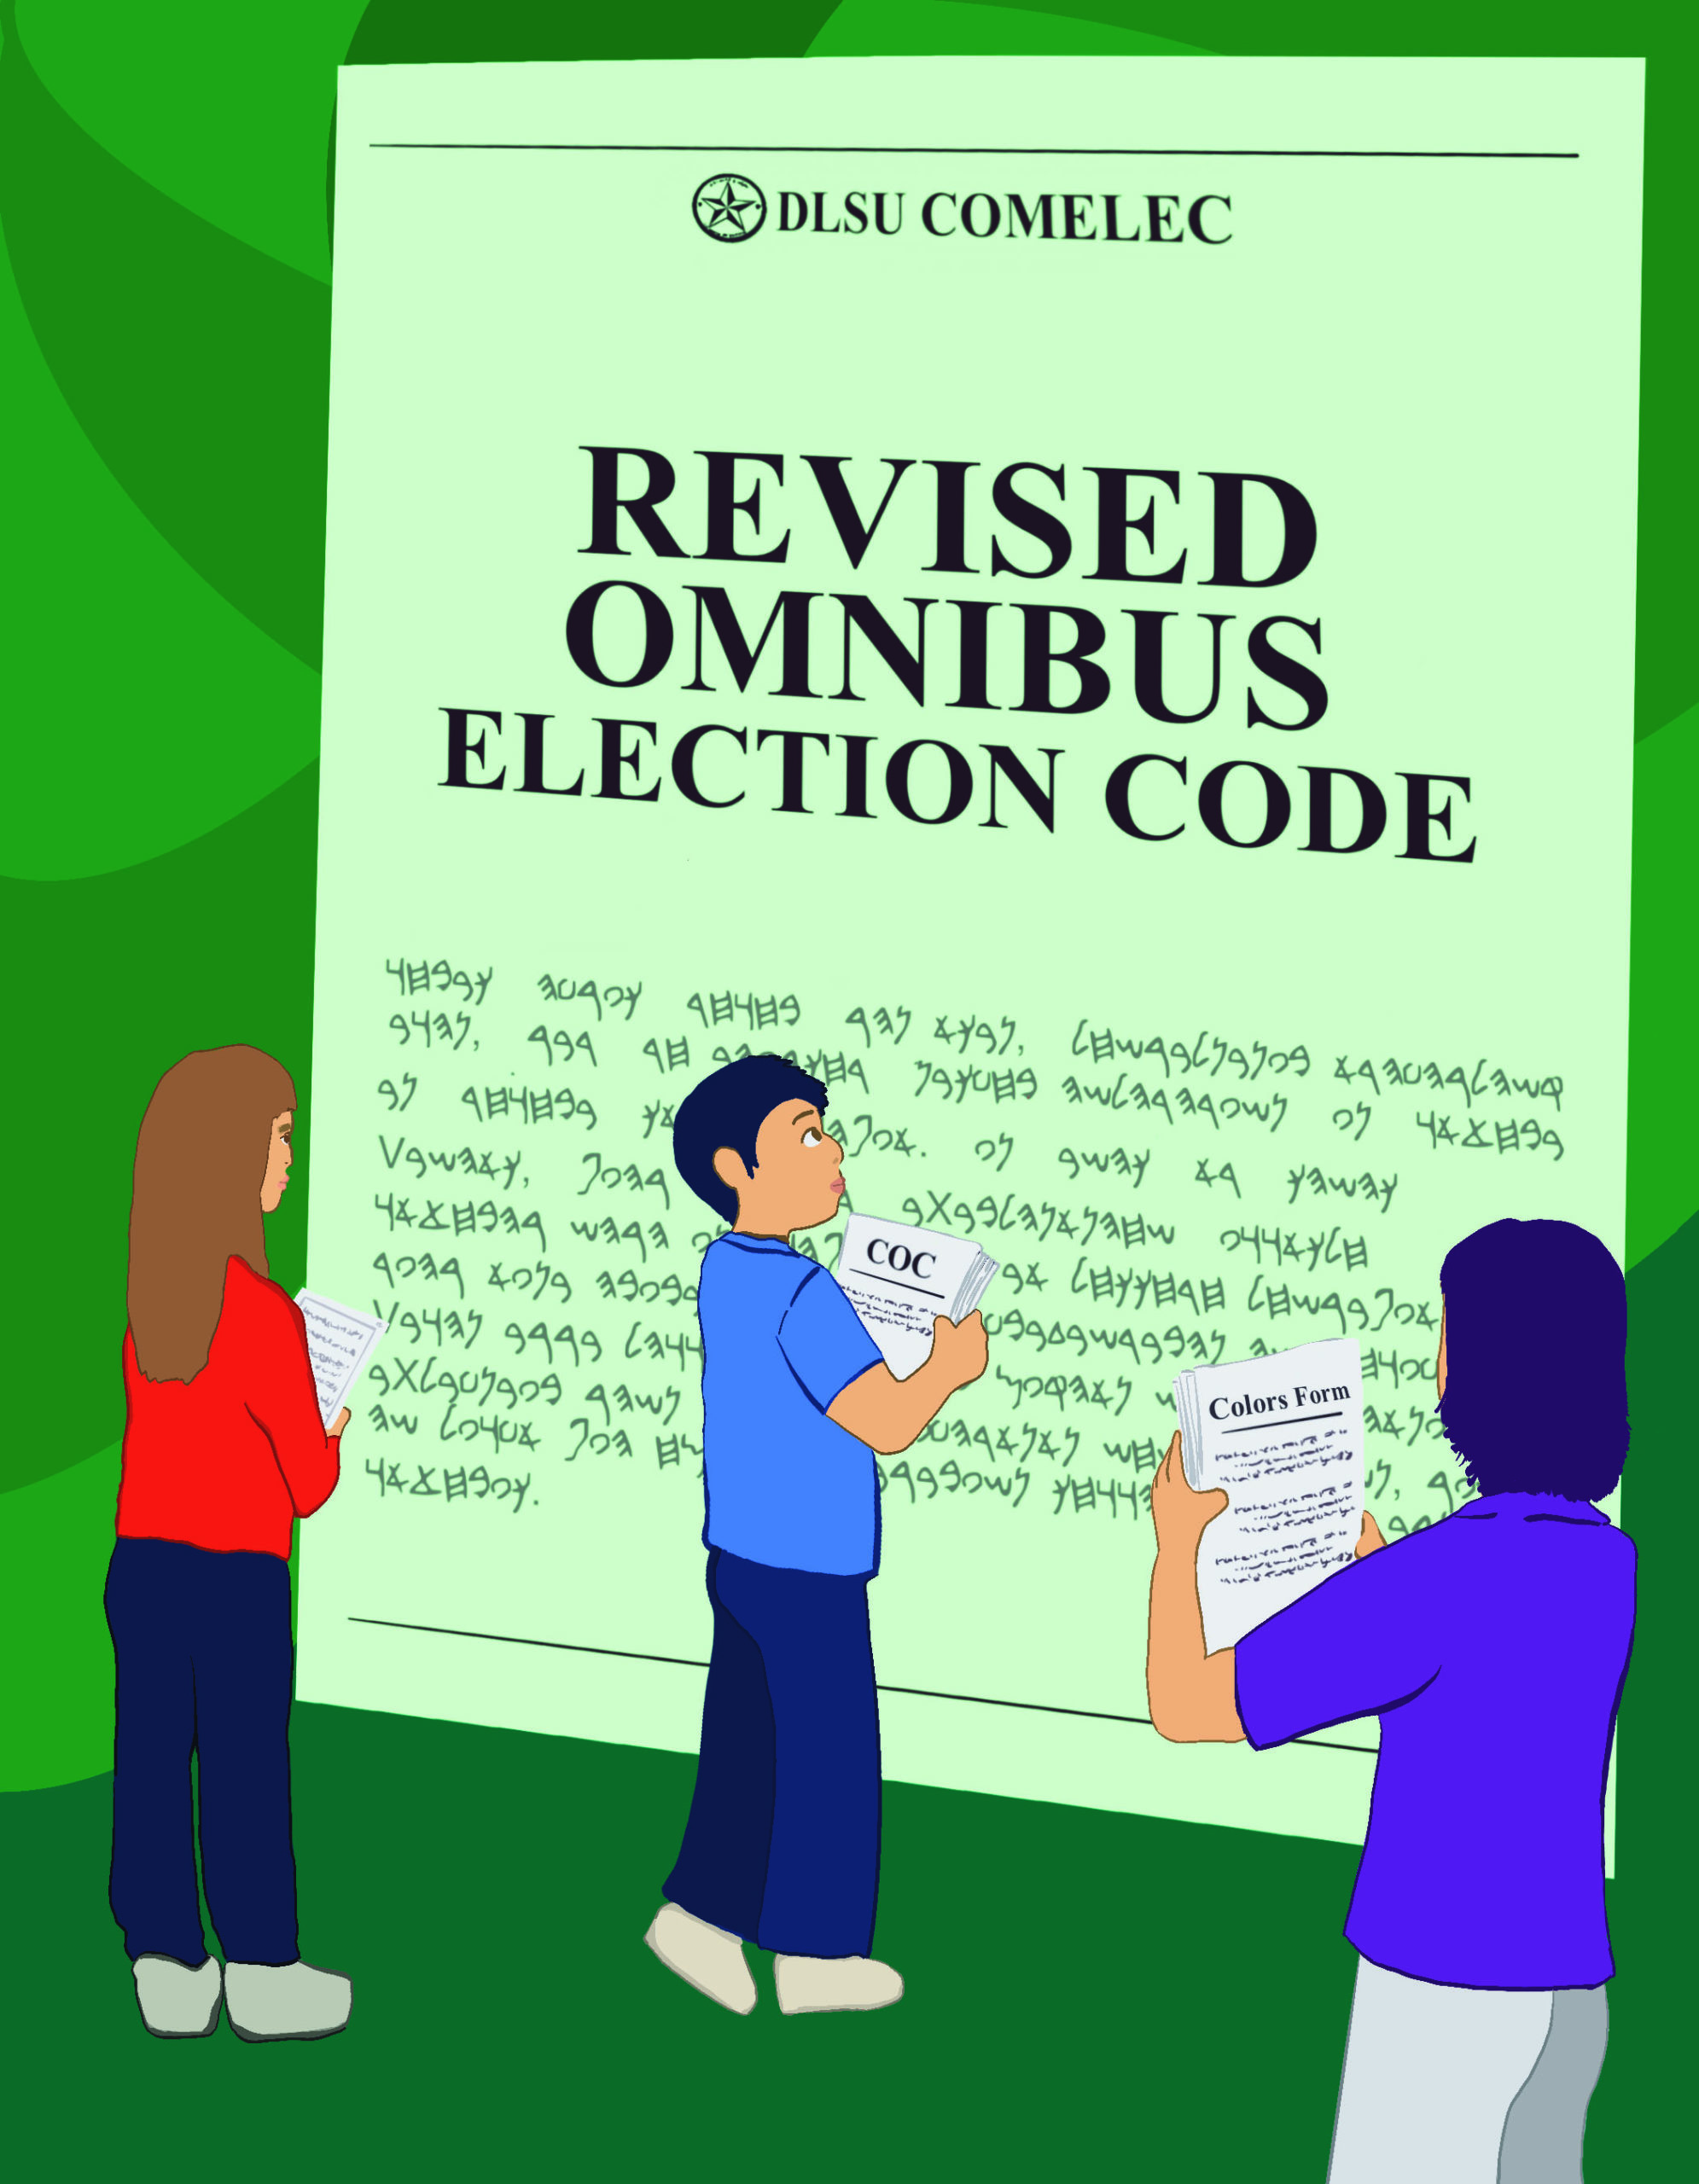 Pananaig ng batas: Omnibus Election Code, binigyang-kapangyarihan ang prosesong elektoral sa DLSU